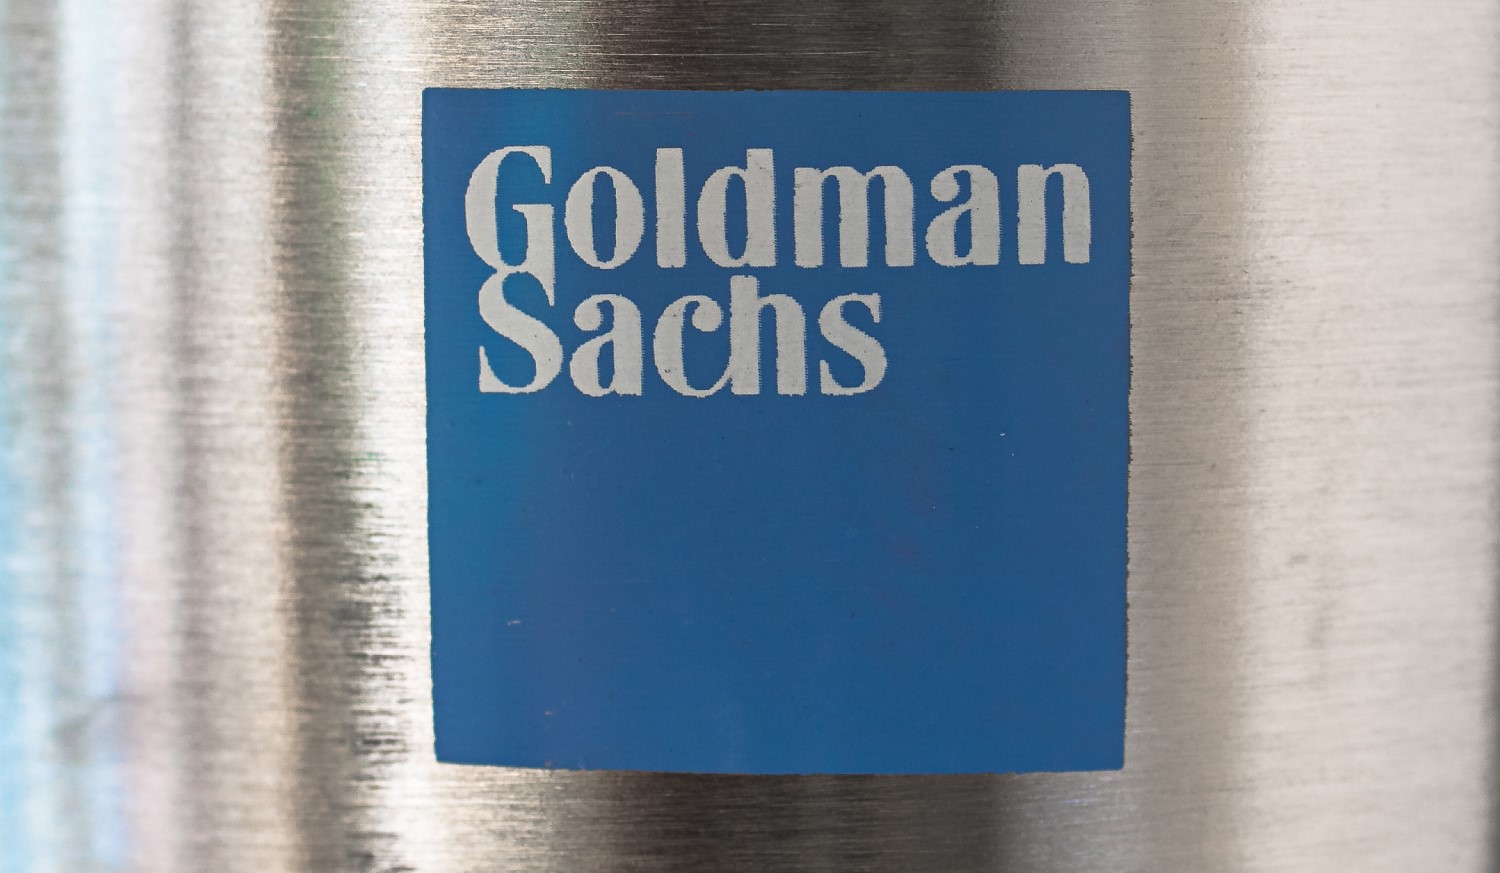 Goldman-sachs-sells-$6.5m-of-shares-in-ripple-partner-moneygram:-sec-filing